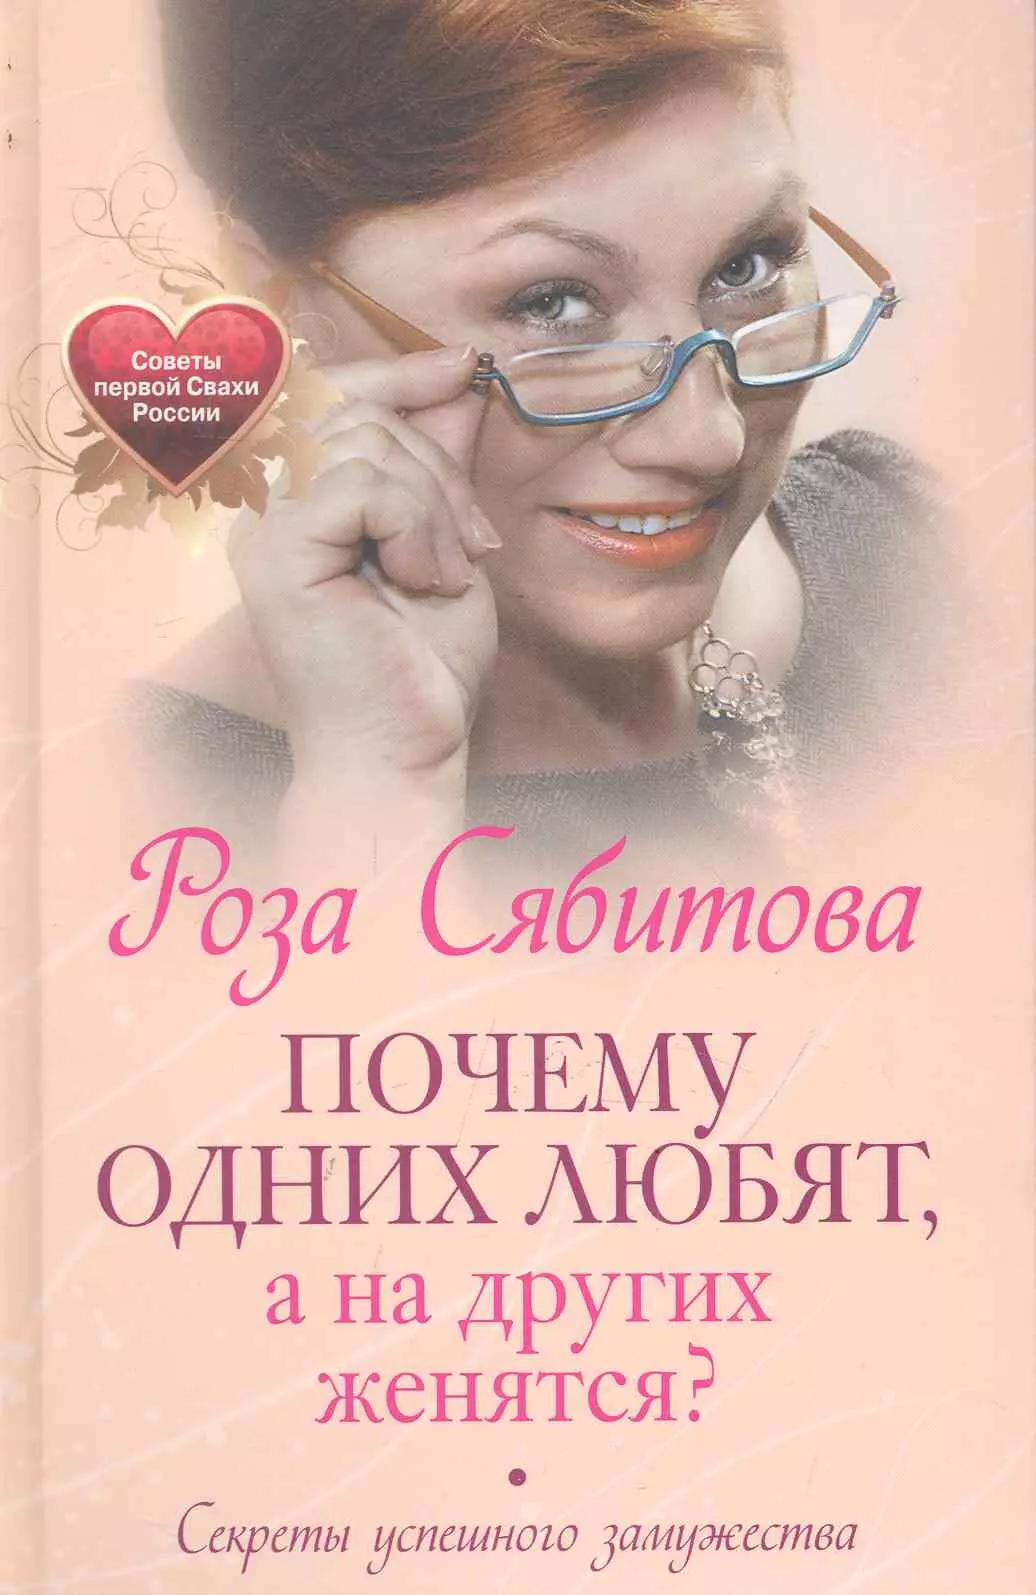 Сябитова Роза Раифовна - Почему одних любят, а на других женятся. Секреты успешного замужества. Советы первой свахи России